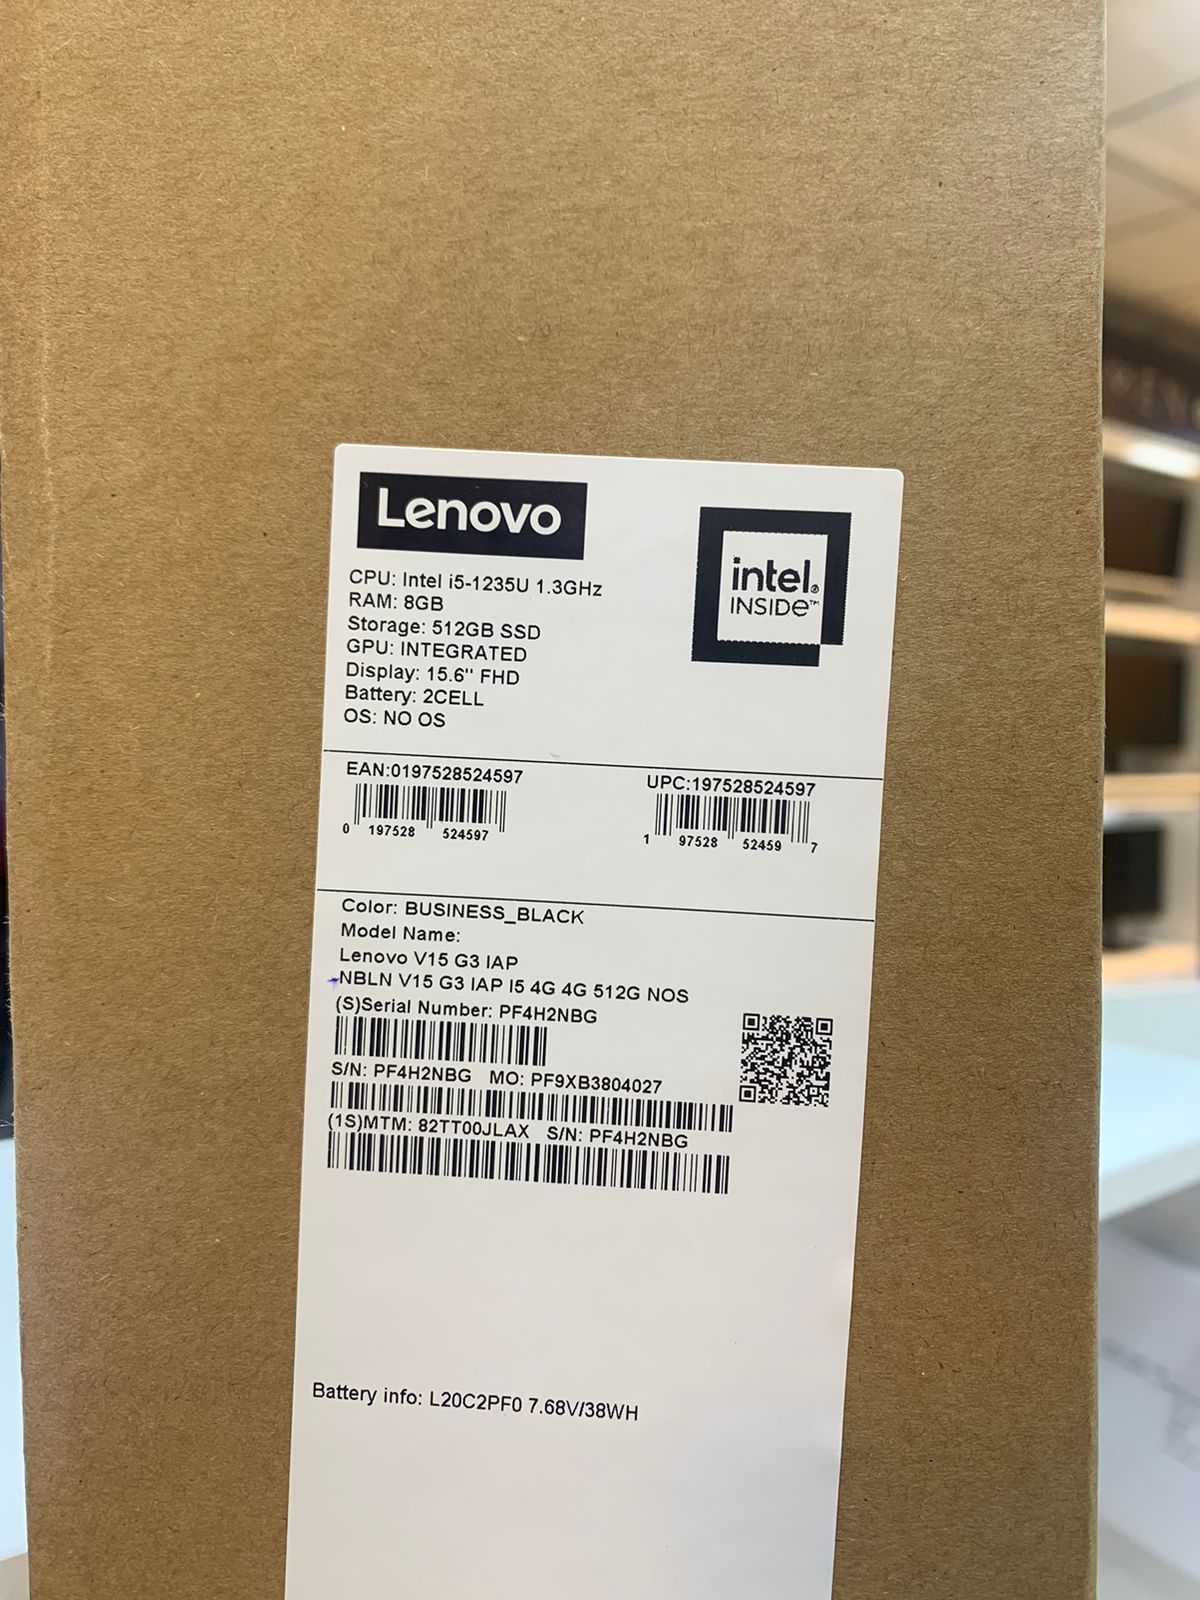 Lenovo V15 G3 IAP, Intel Core i5-1235U, RAM 8GB, 512GB SSD, Intel Iris Xe, 15.6 FHD, Business Black